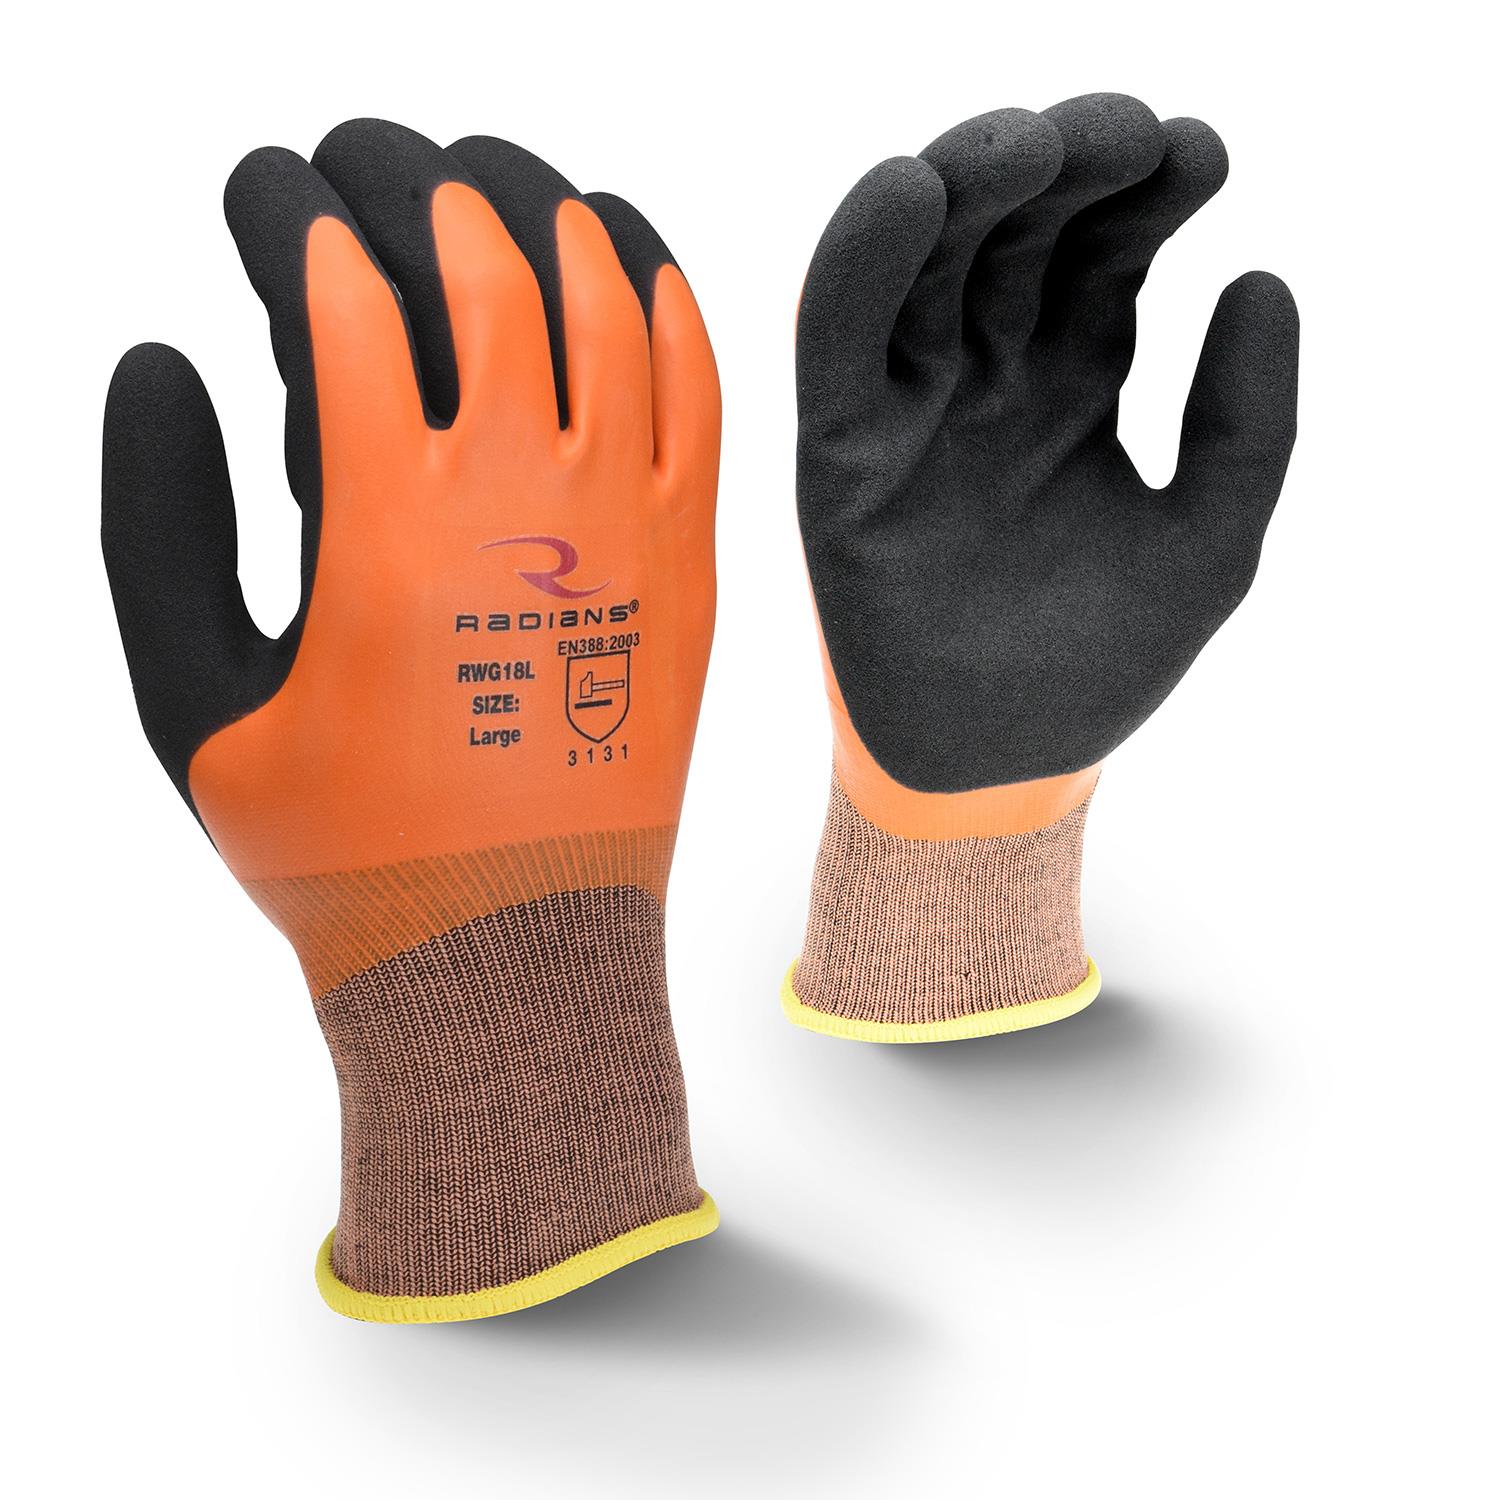 RADIANS RWG18 LATEX COATED WORK GLOVE - Latex Coated Gloves